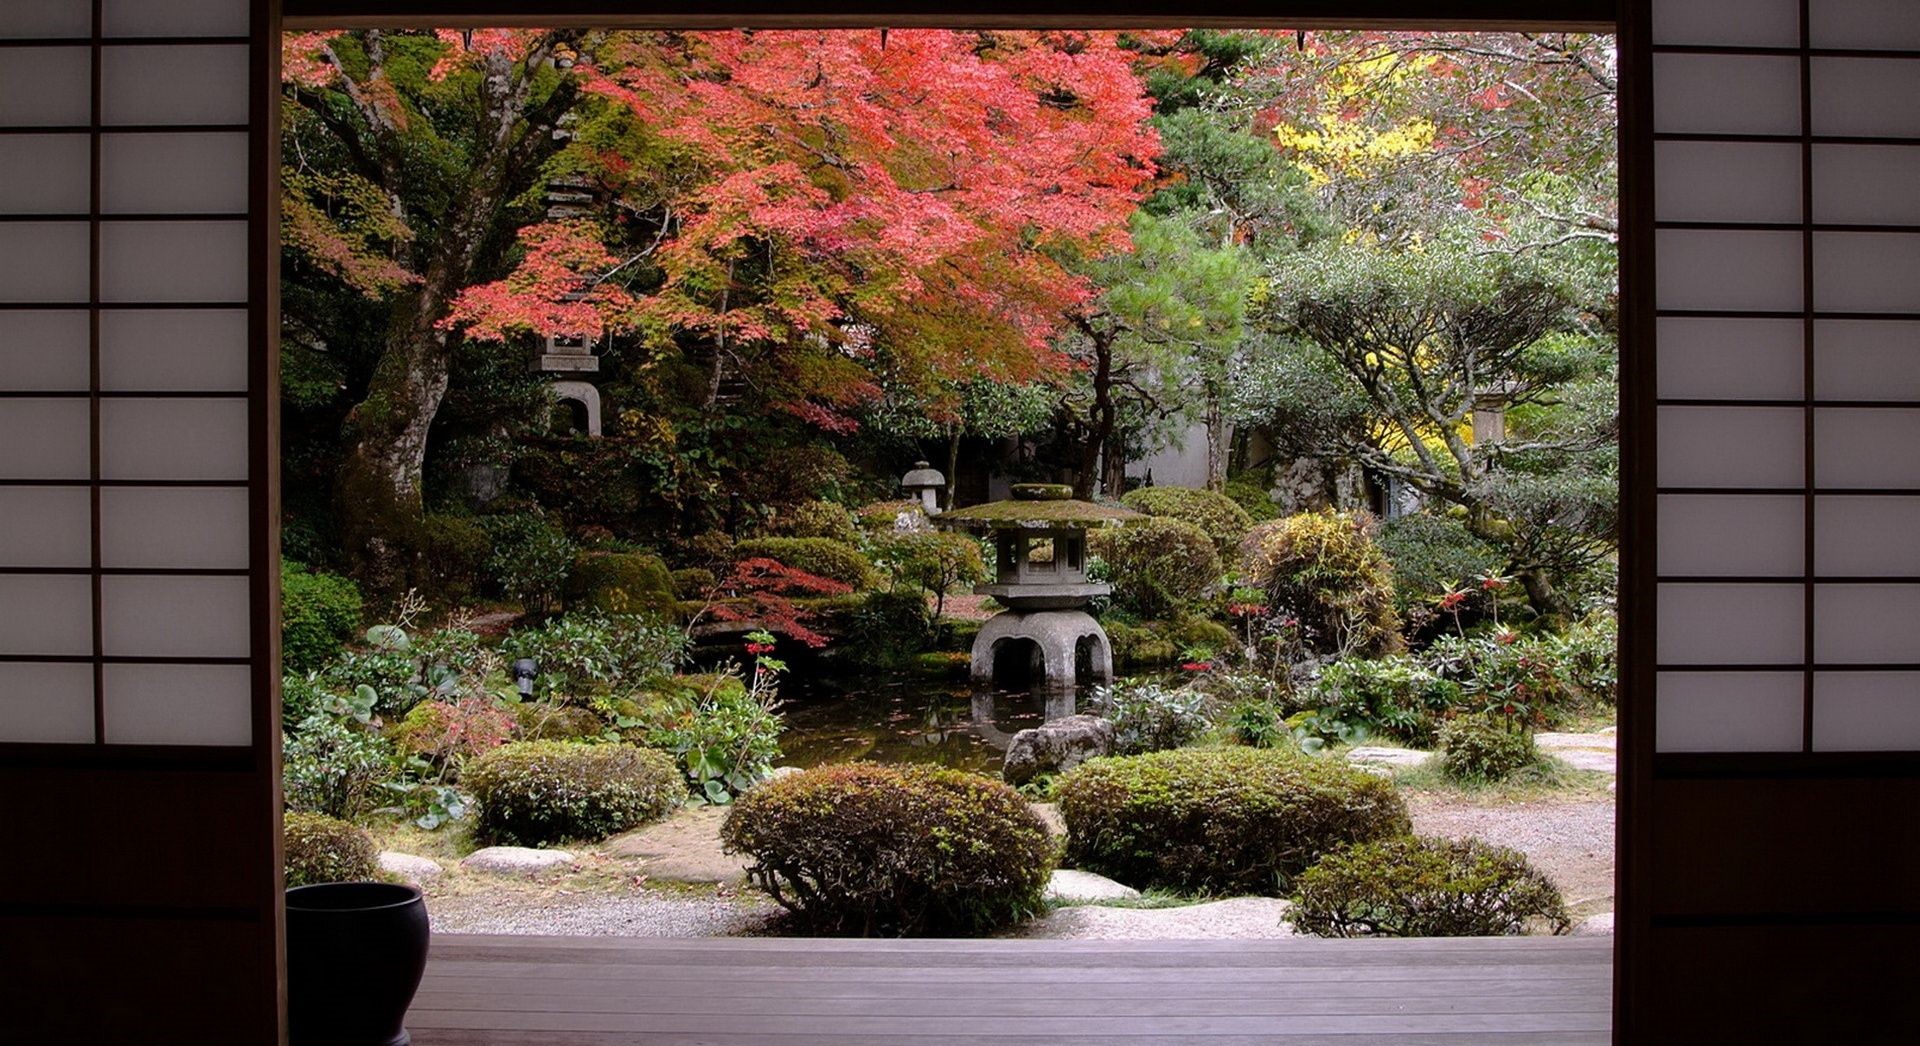 تصویر جالب HD از باغ سنگ ذن در فصل پاییز برای دوستداران مدیتیشن